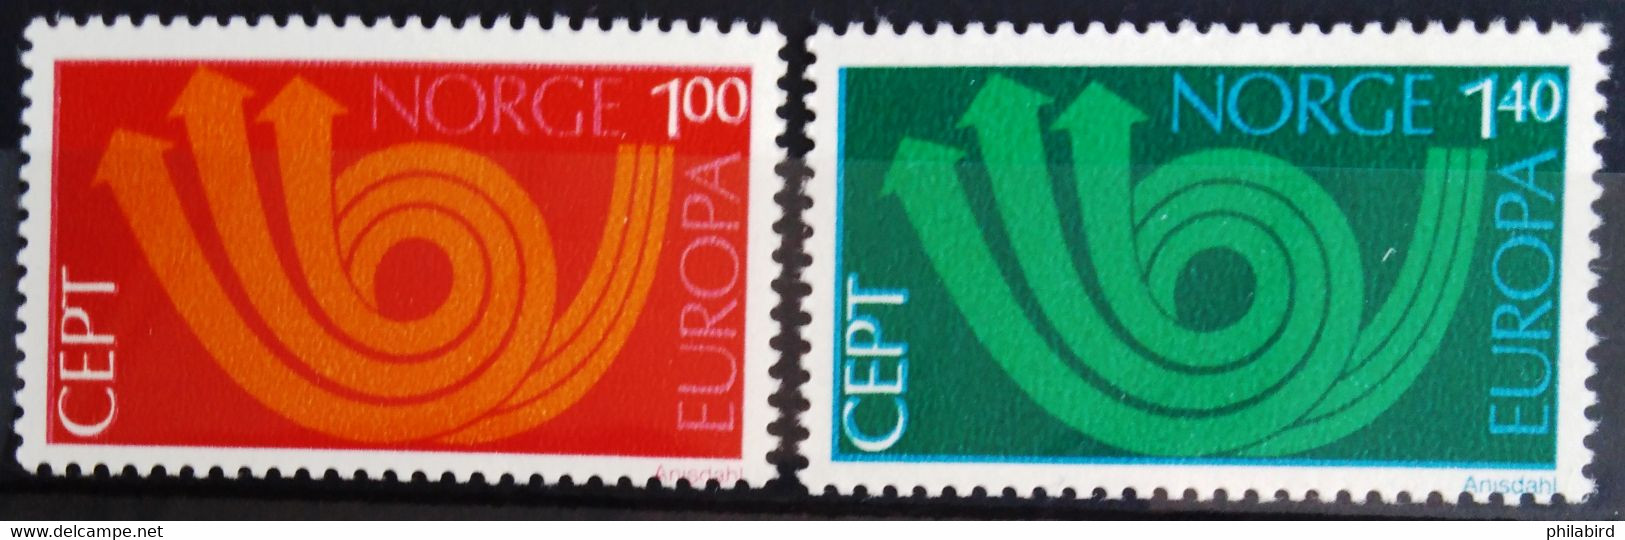 EUROPA 1973 - NORVEGE                   N° 616/617                       NEUF** - 1973